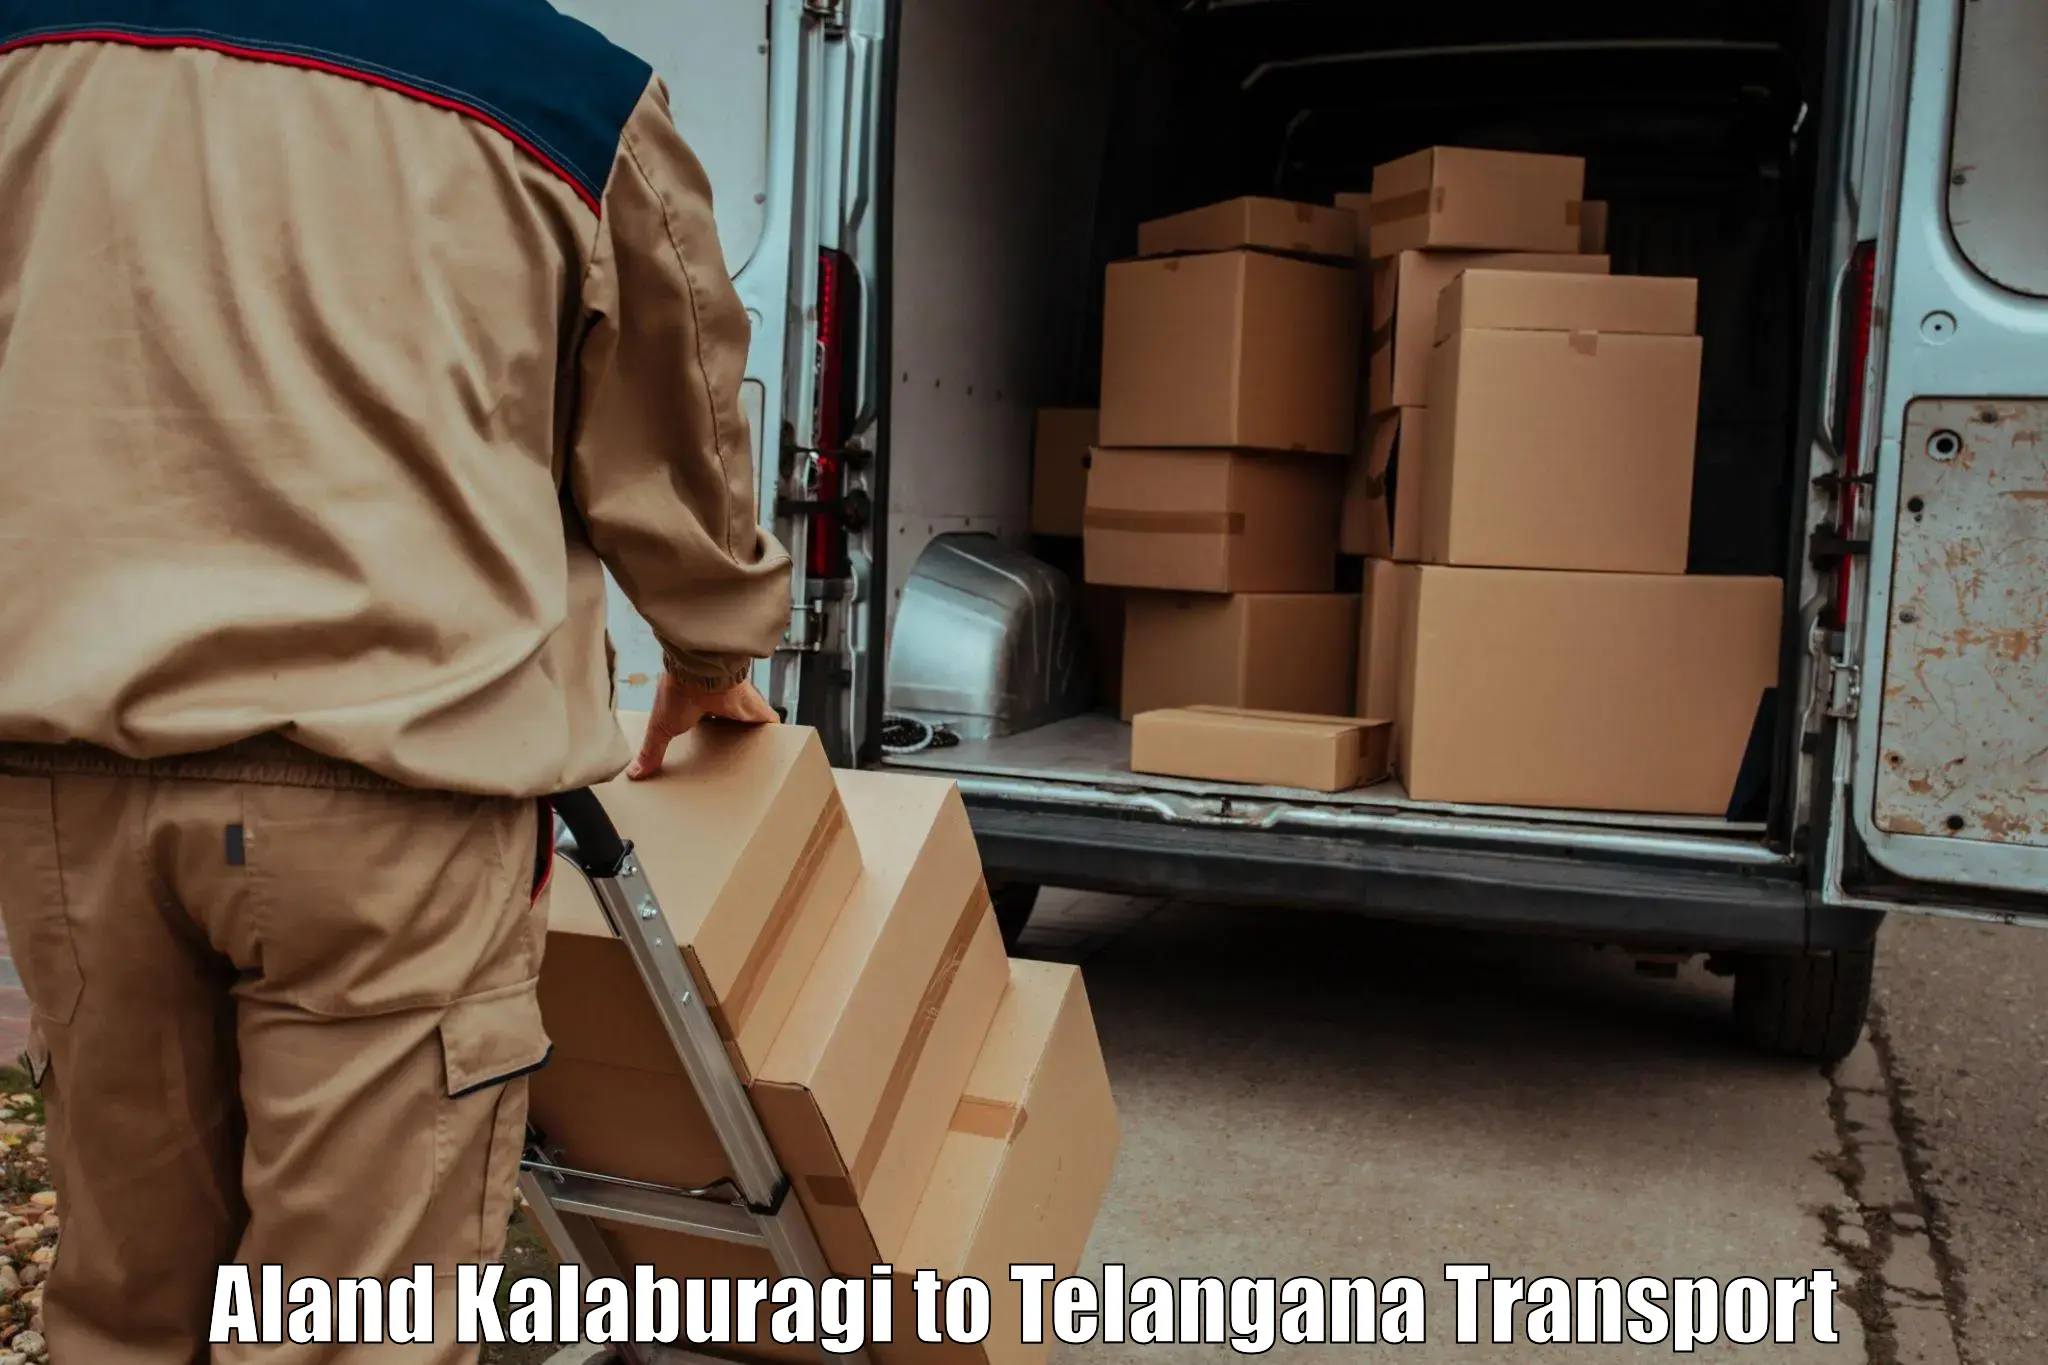 Shipping partner Aland Kalaburagi to Manopad